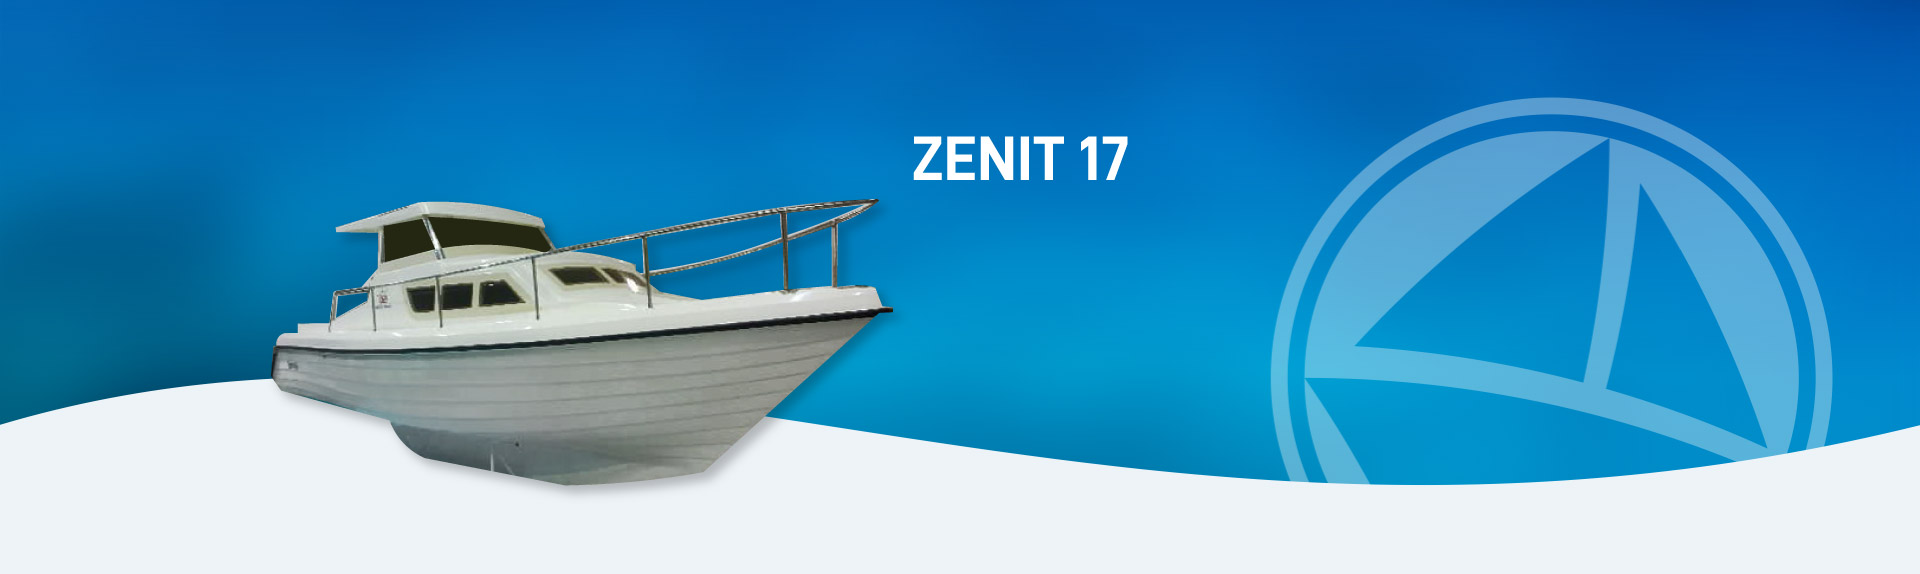 Zenit 17